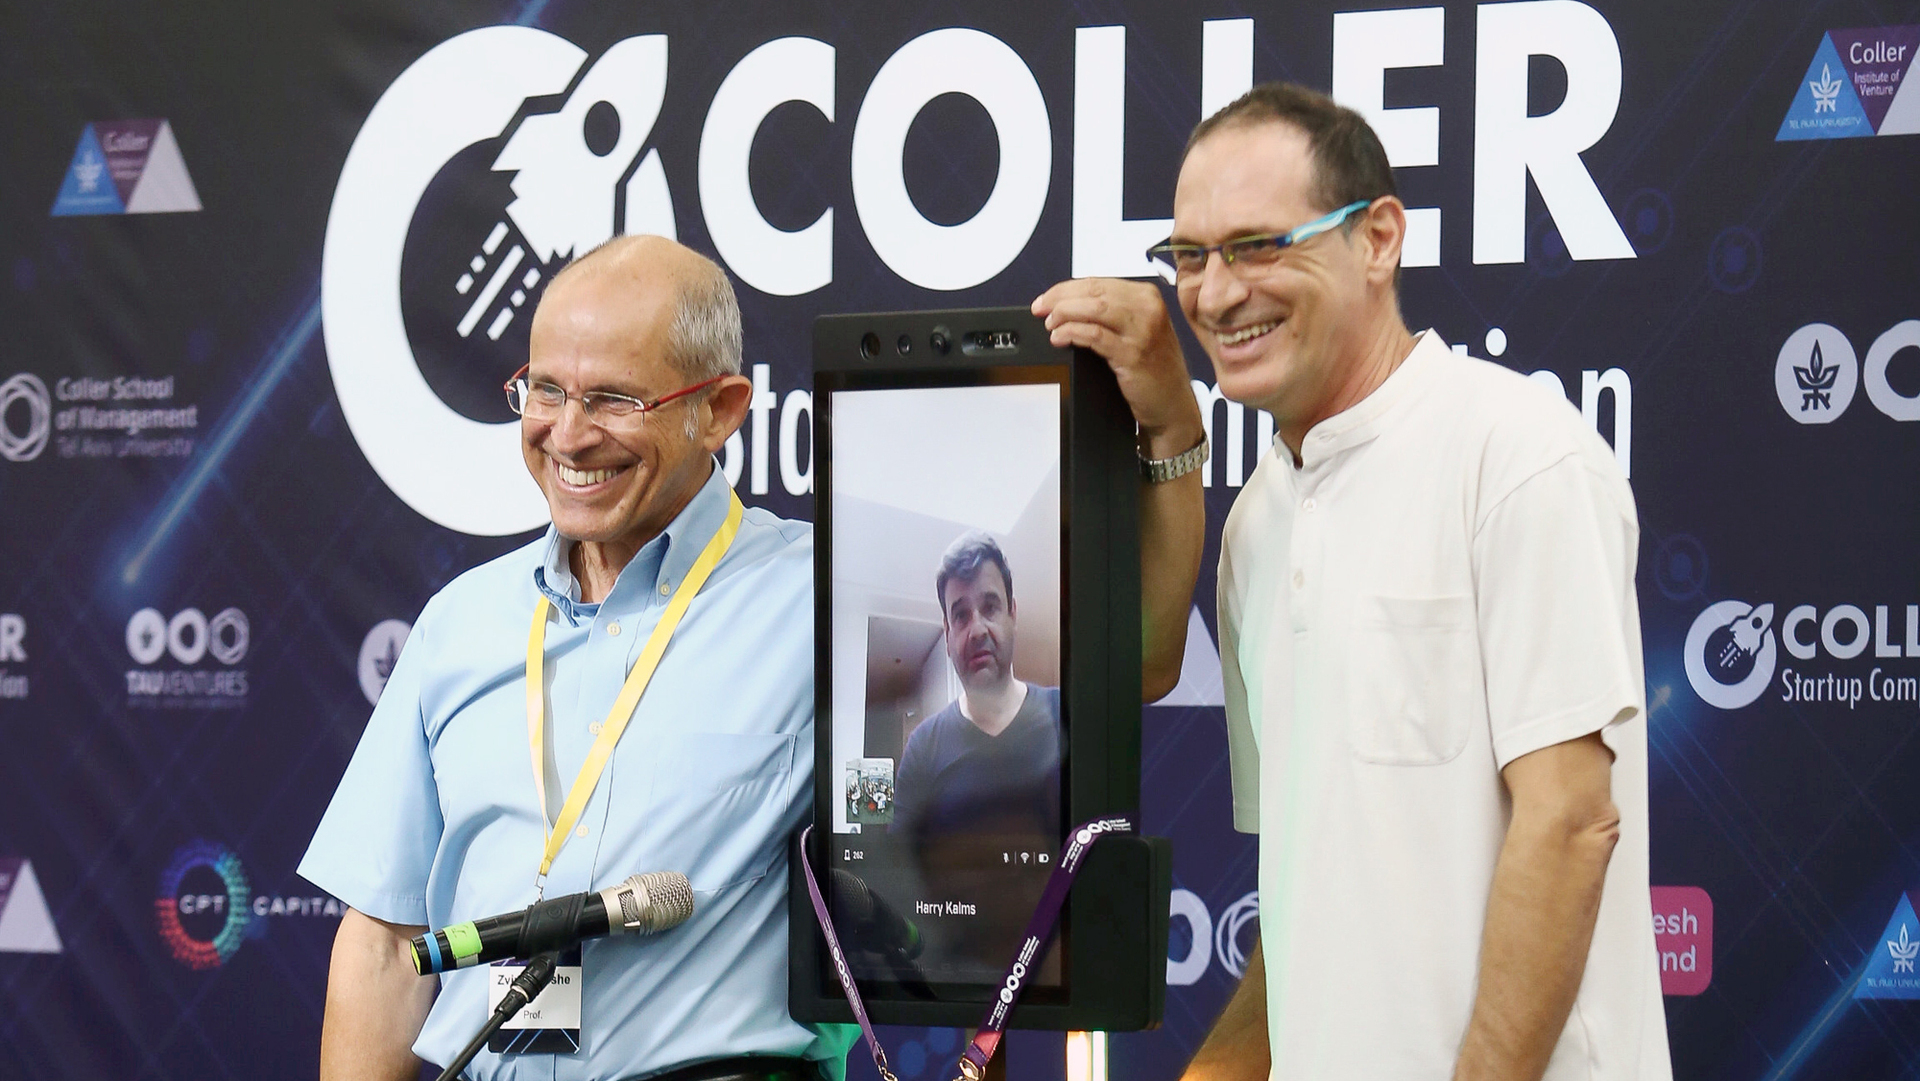 תחרות קולר מימין ד"ר אייל בנימין ג'רמי קולר באמצעות רובוט ופרופ' משה צבירן